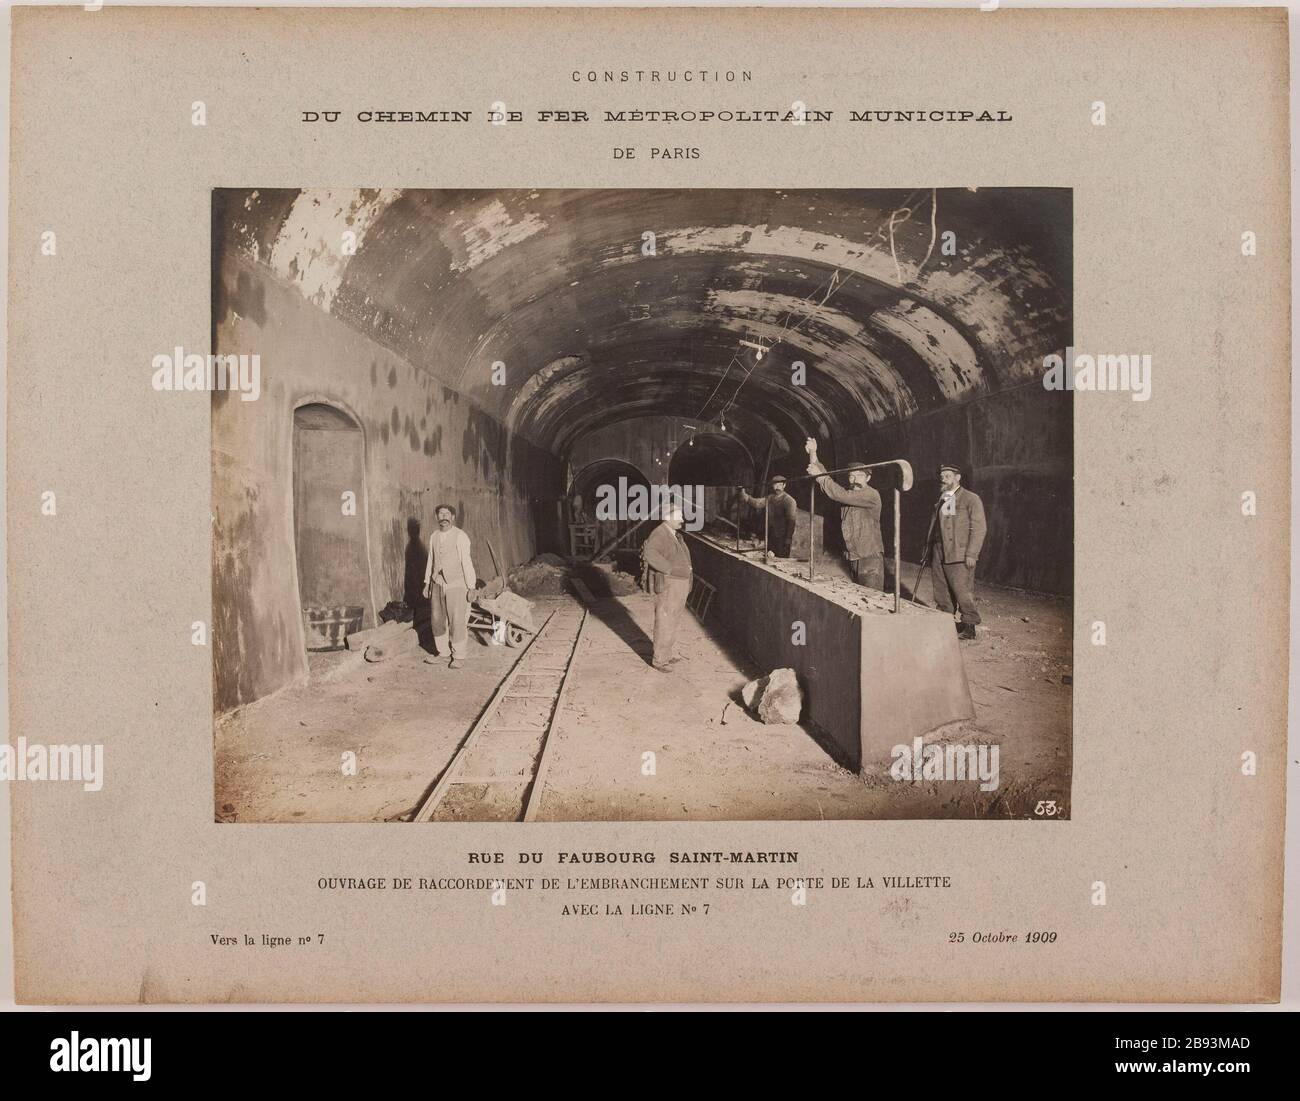 Metro porte de la villette hi-res stock photography and images - Alamy